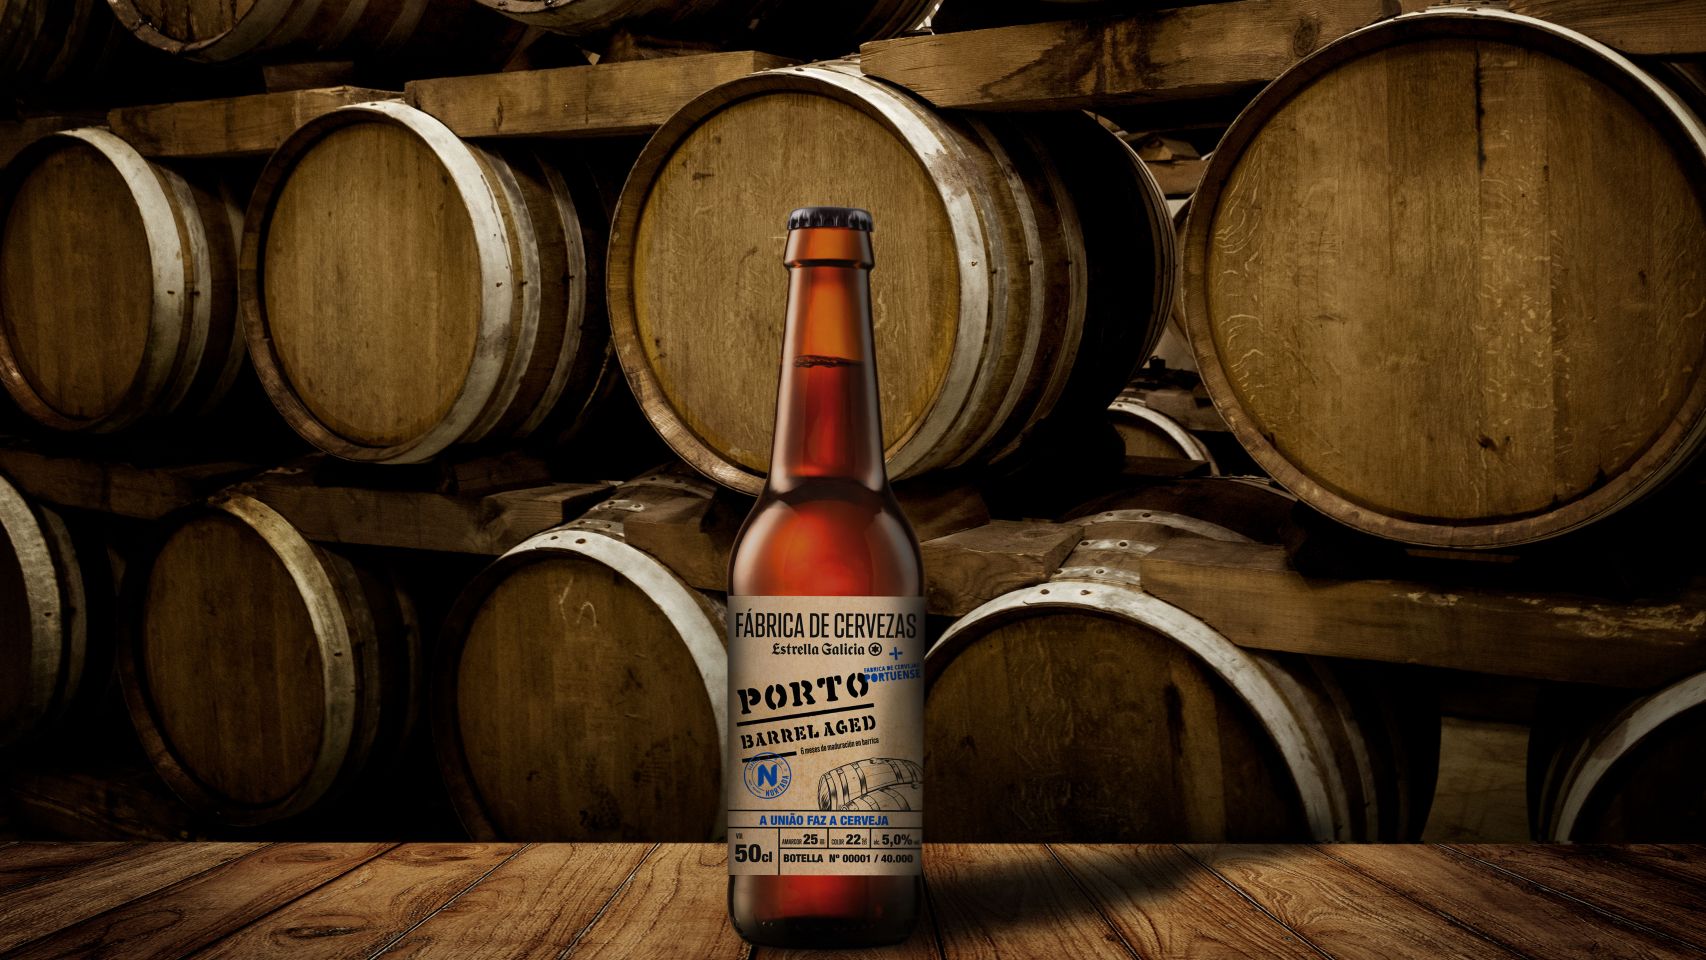 La nueva Fábrica de Cervezas Estrella Galicia Porto Barrel Aged